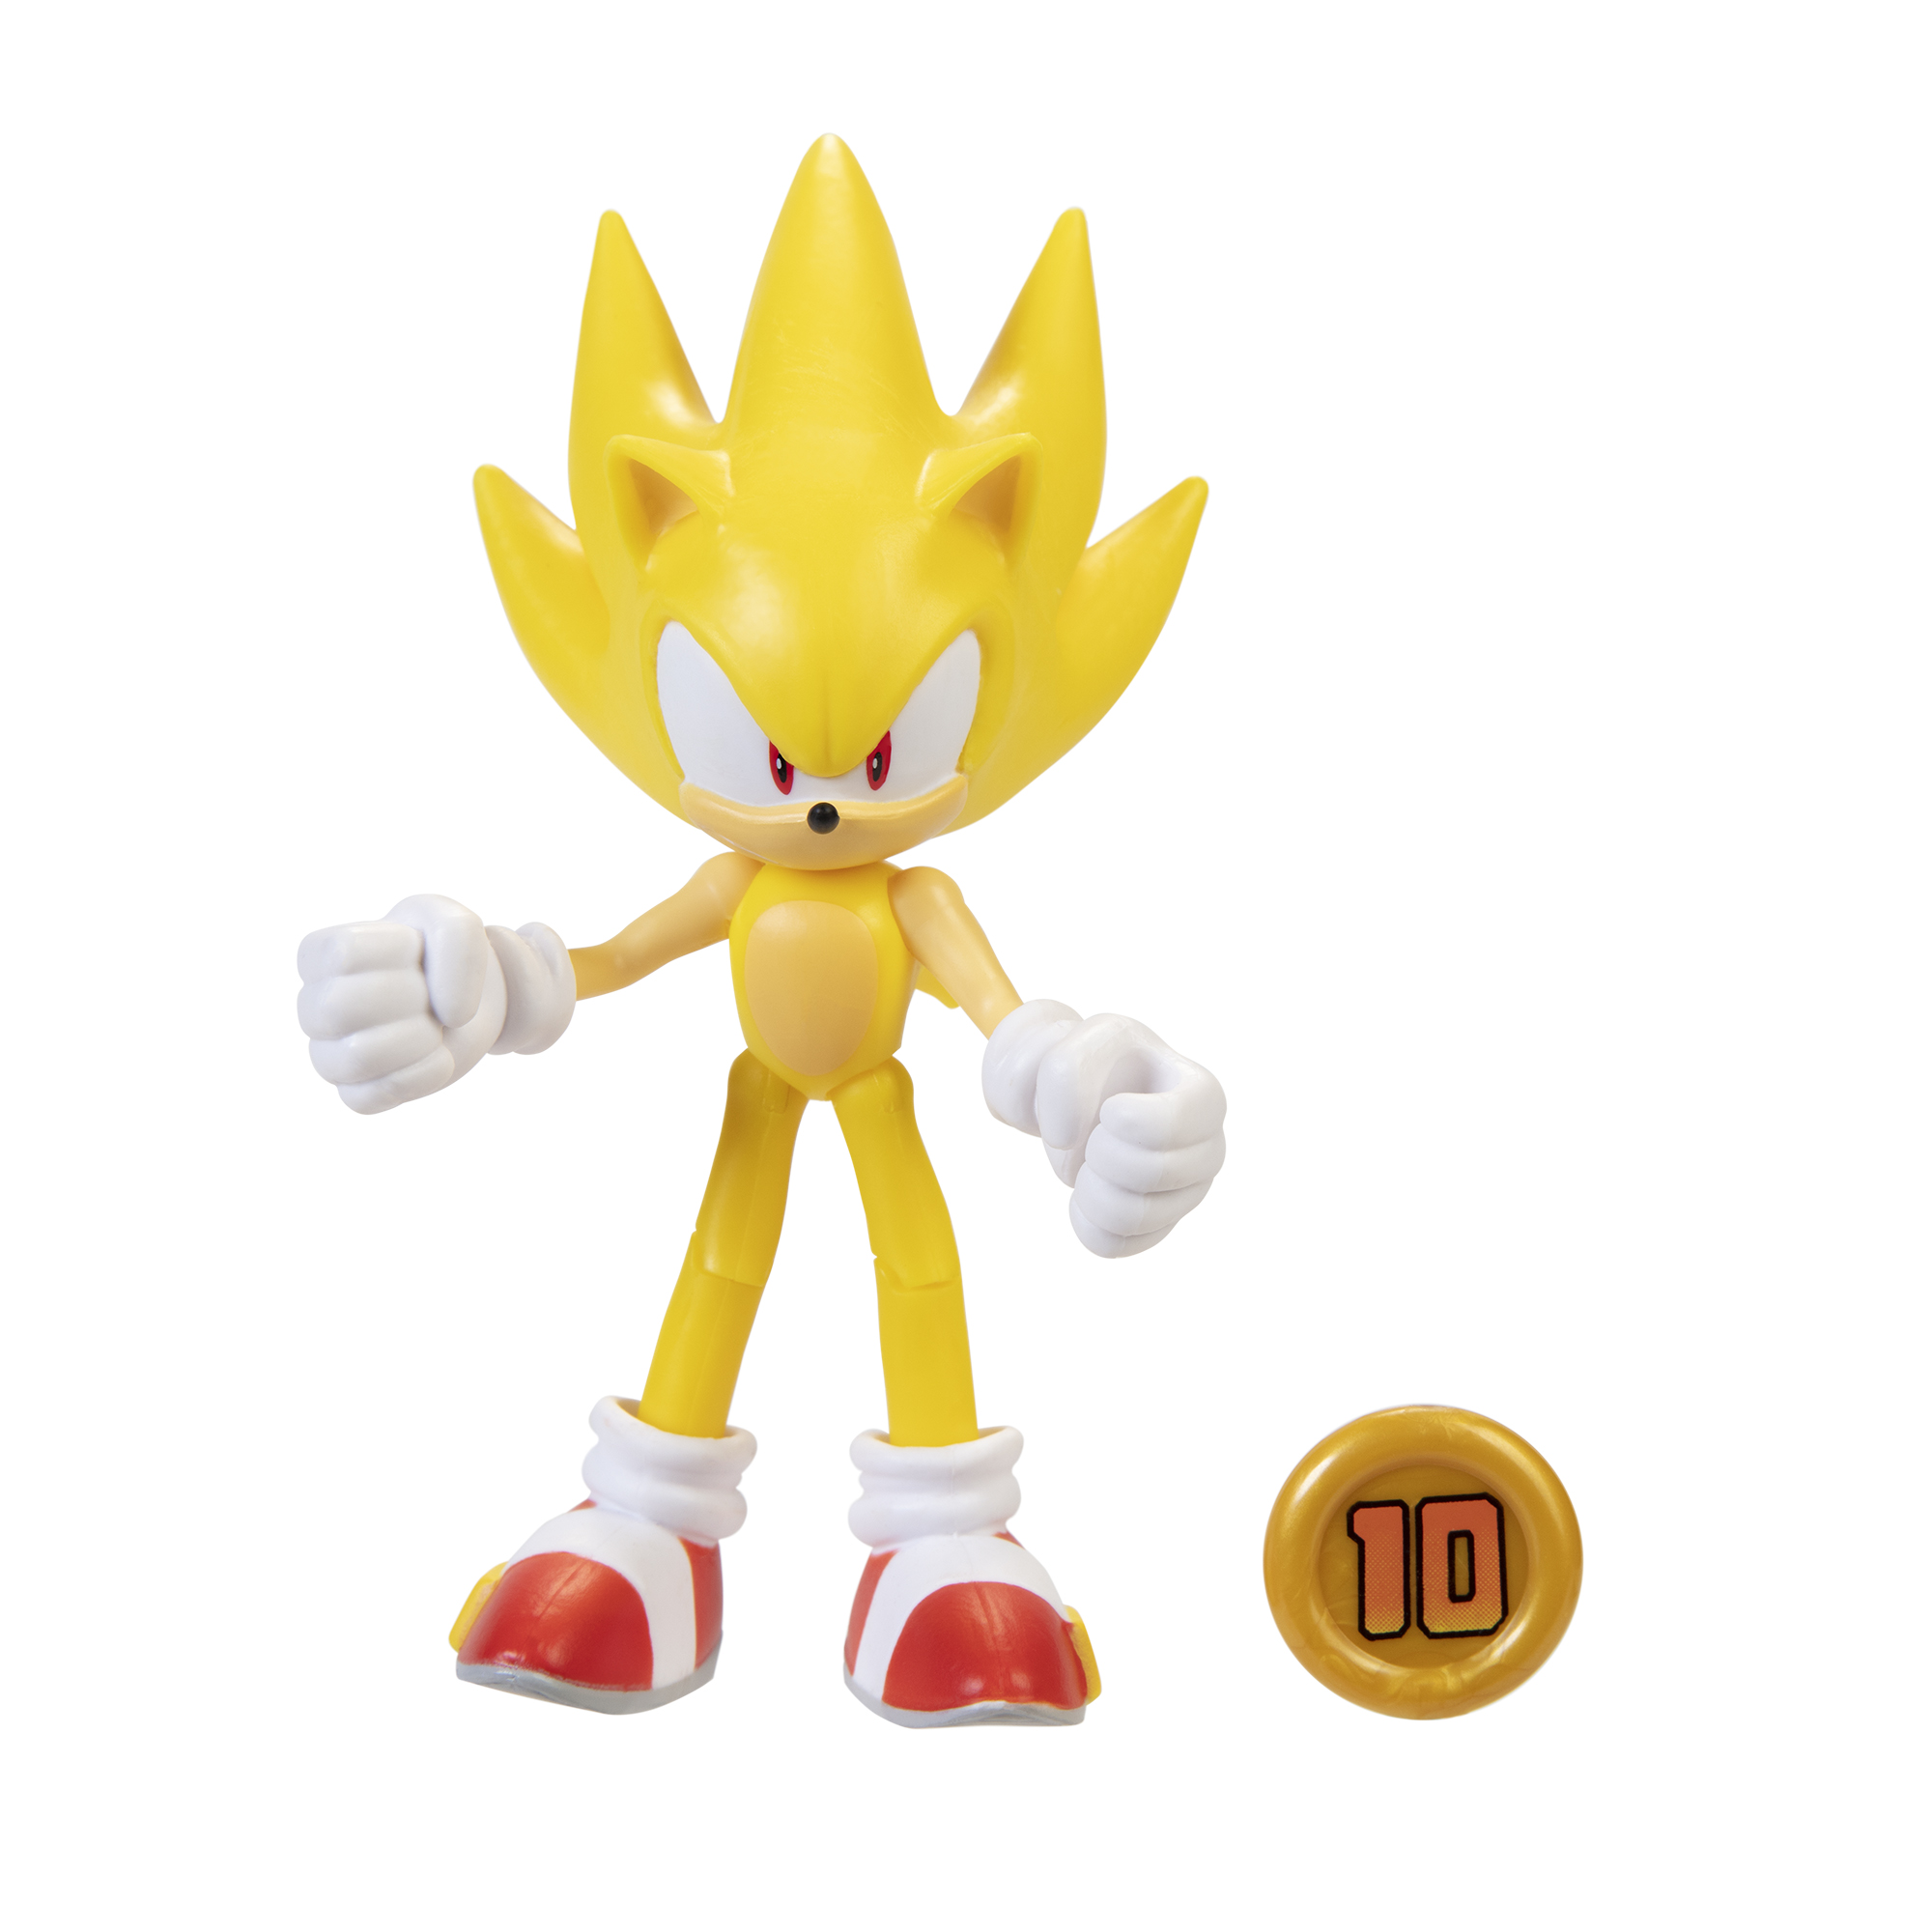 Comprar o Conjunto Ultimate Sonic